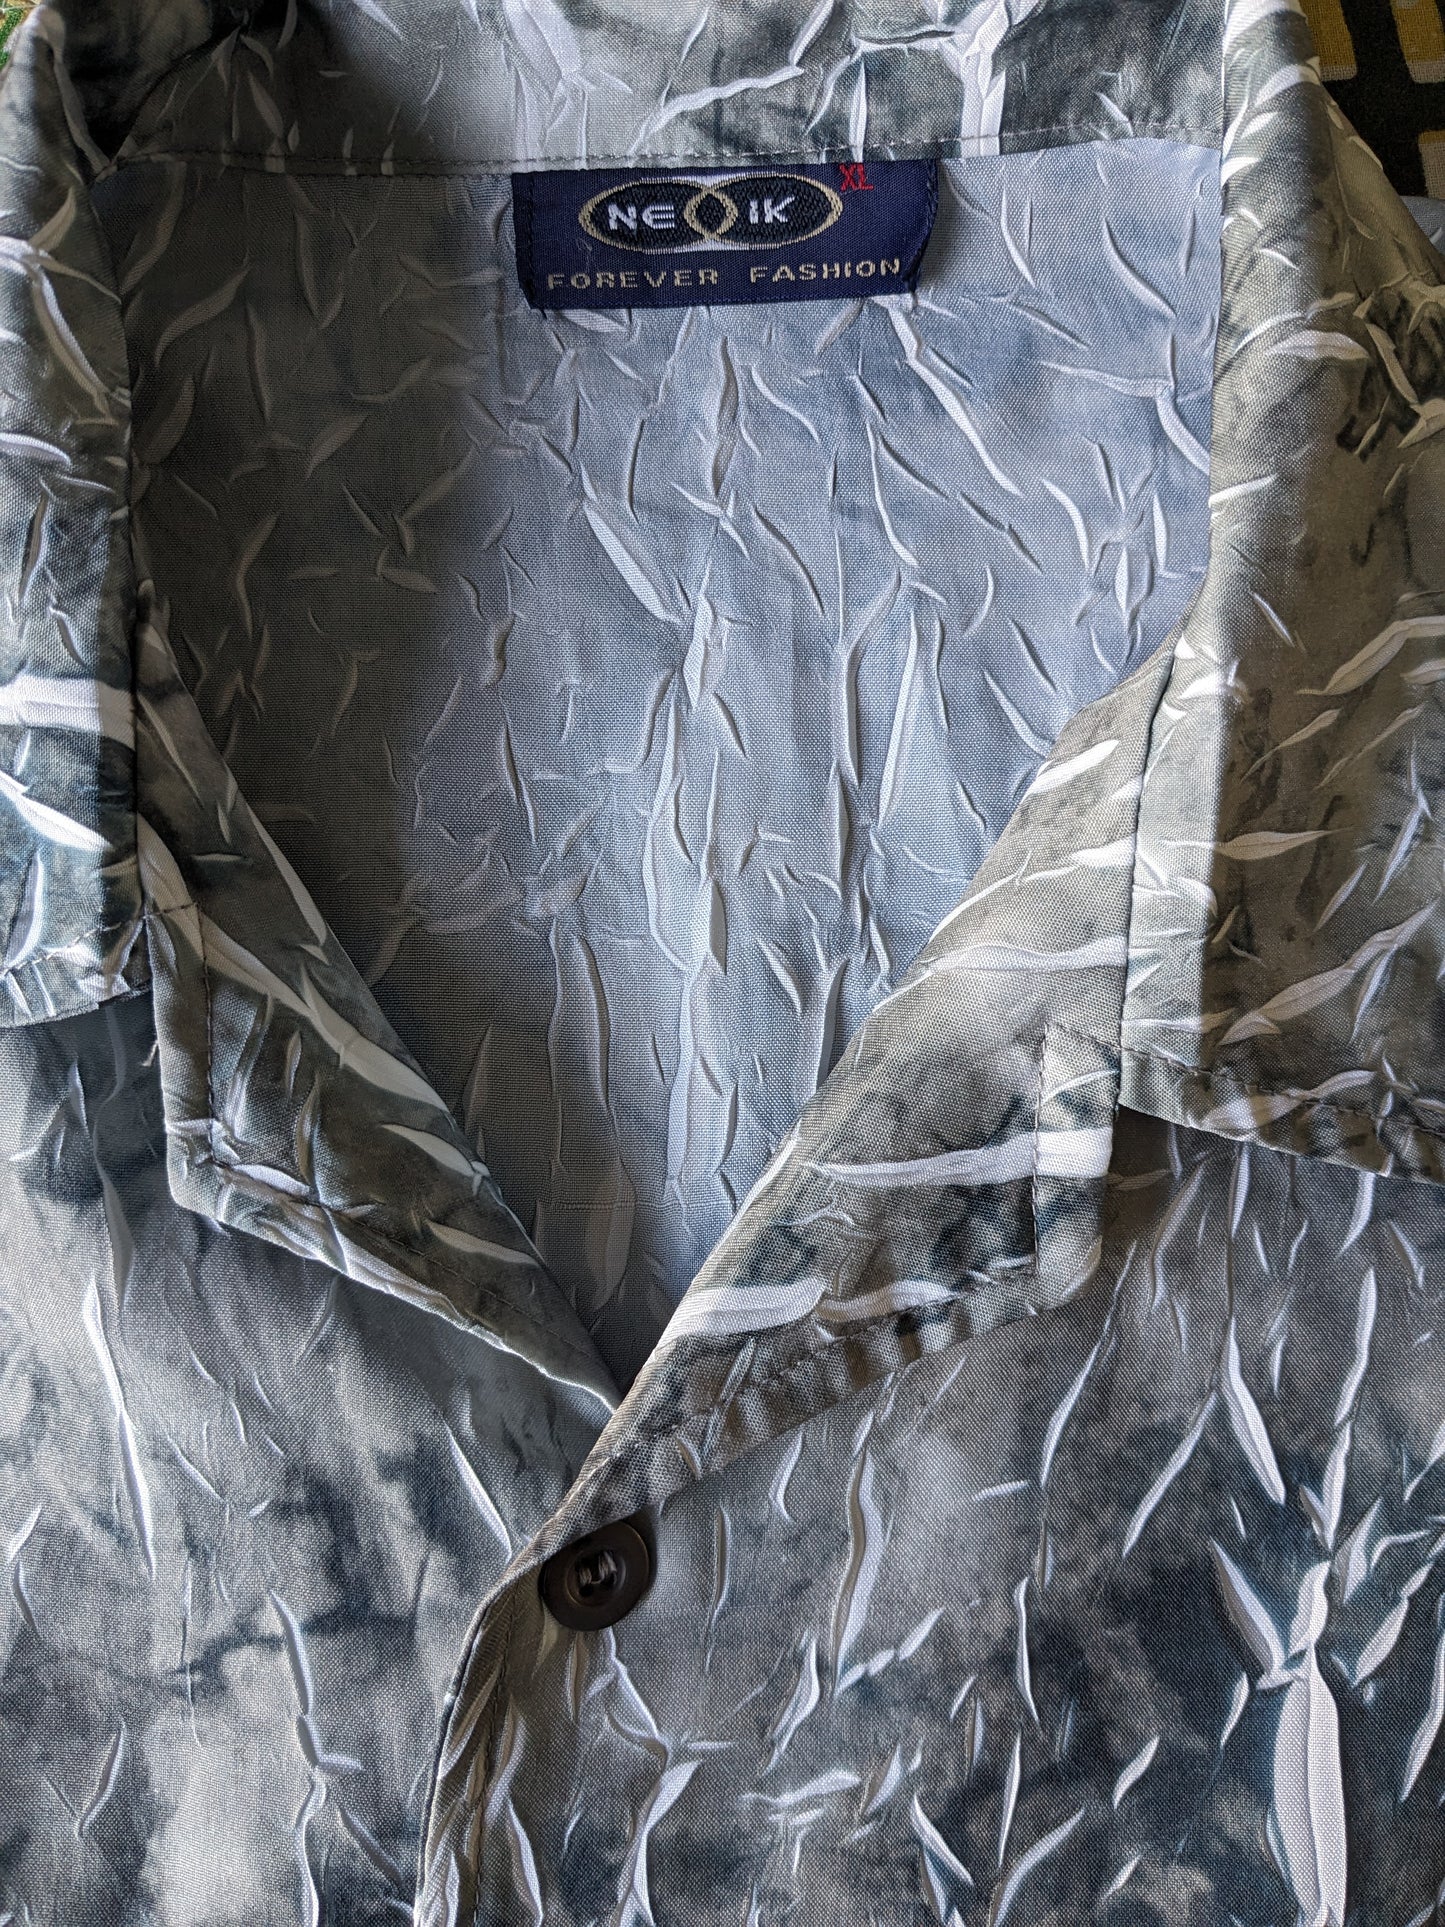 NE-I Shirt vintage manica corta. Effetto delle rughe bianco grigio. Dimensione XL / XXL-2XL.